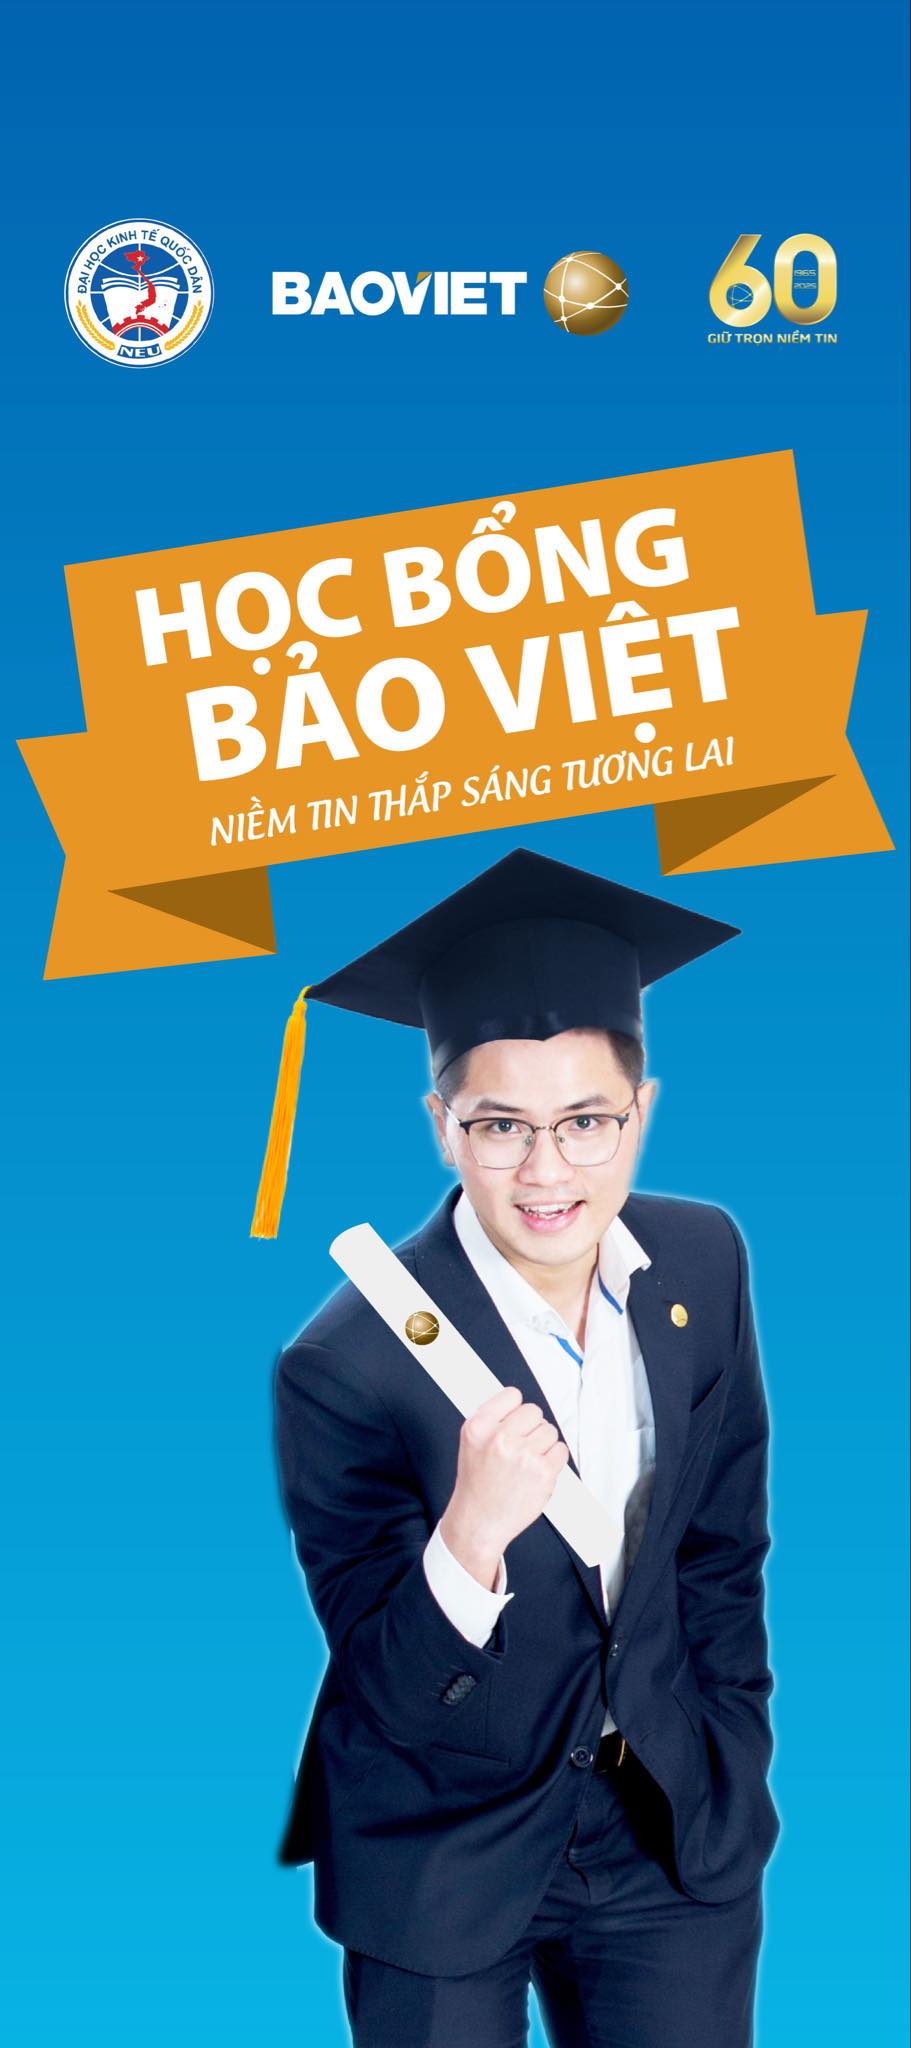 Hoc bong Bao VietHoc bong Bao Viet